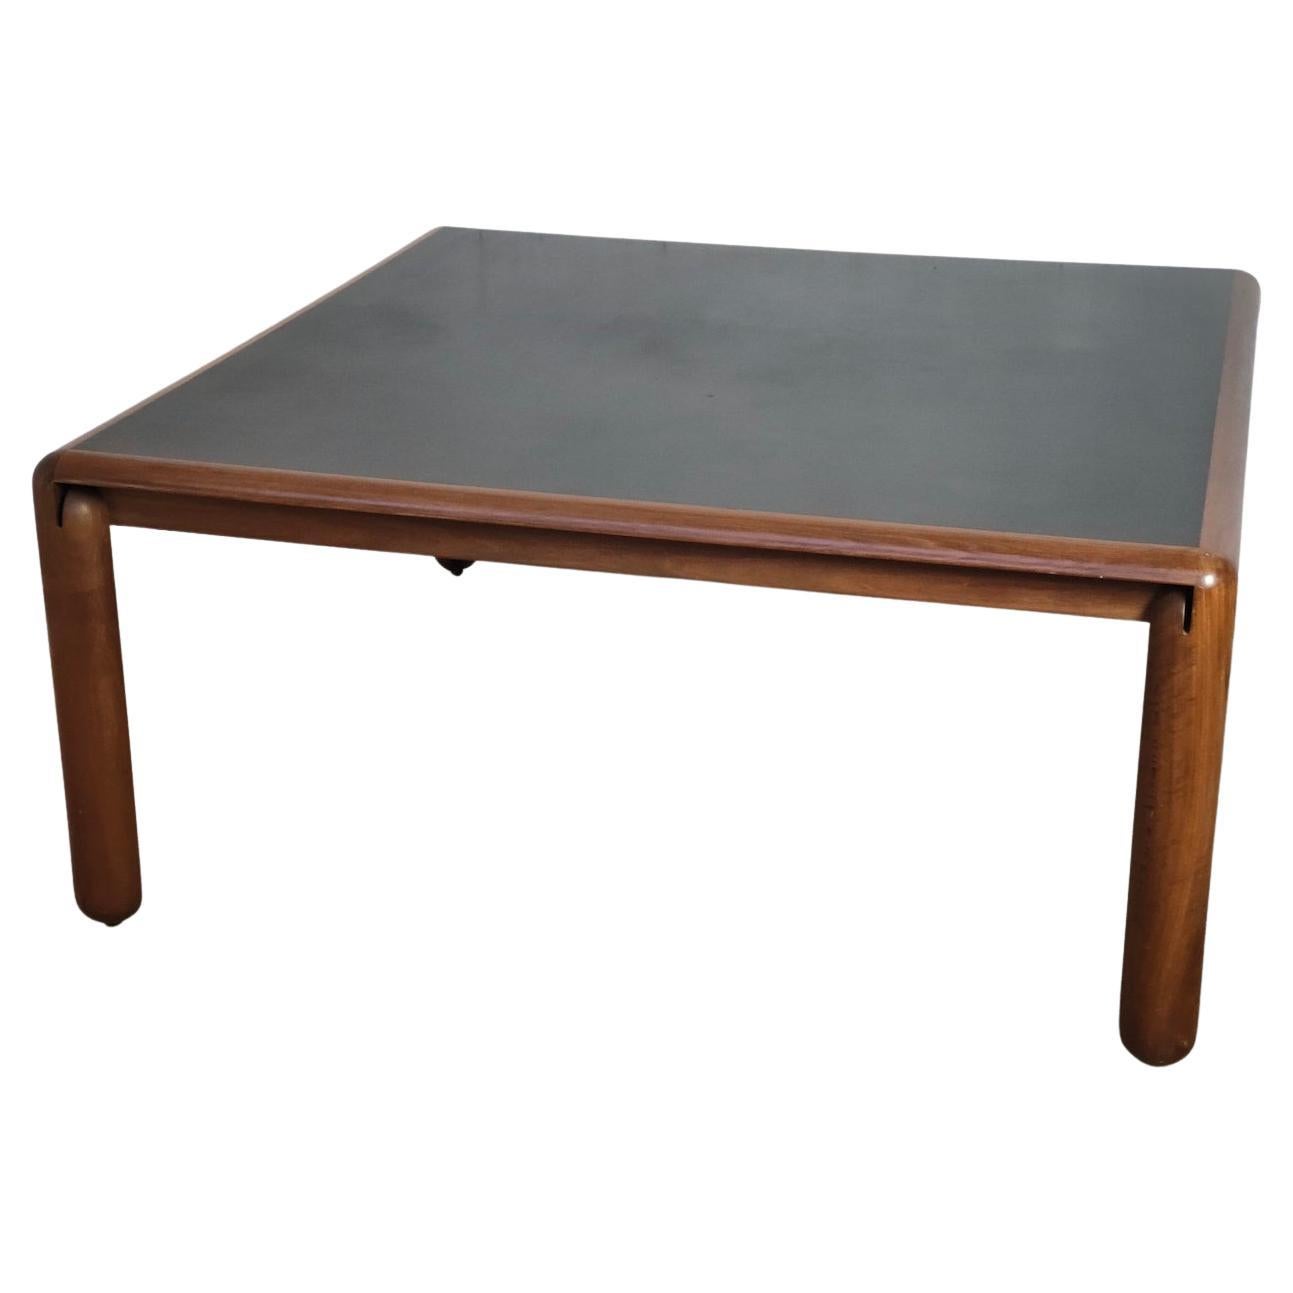 Quadratischer Tisch aus Nussbaumholz Modell 781 von Vico Magistretti für Cassina, 60er-, 70er-Jahre